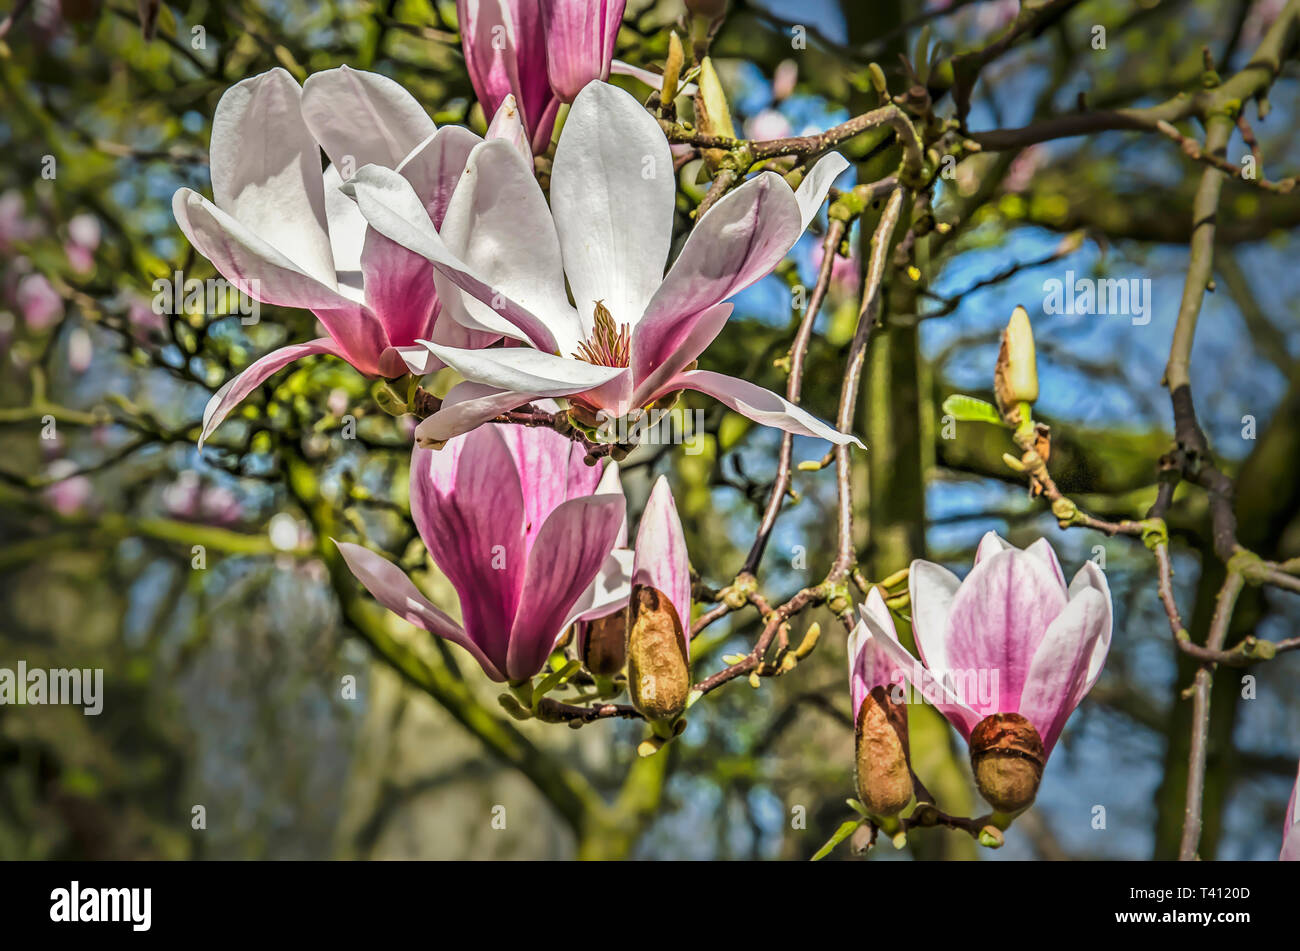 Cerca de varios magnolia flores, algunas más abiertas que otras, en un día soleado de primavera Foto de stock